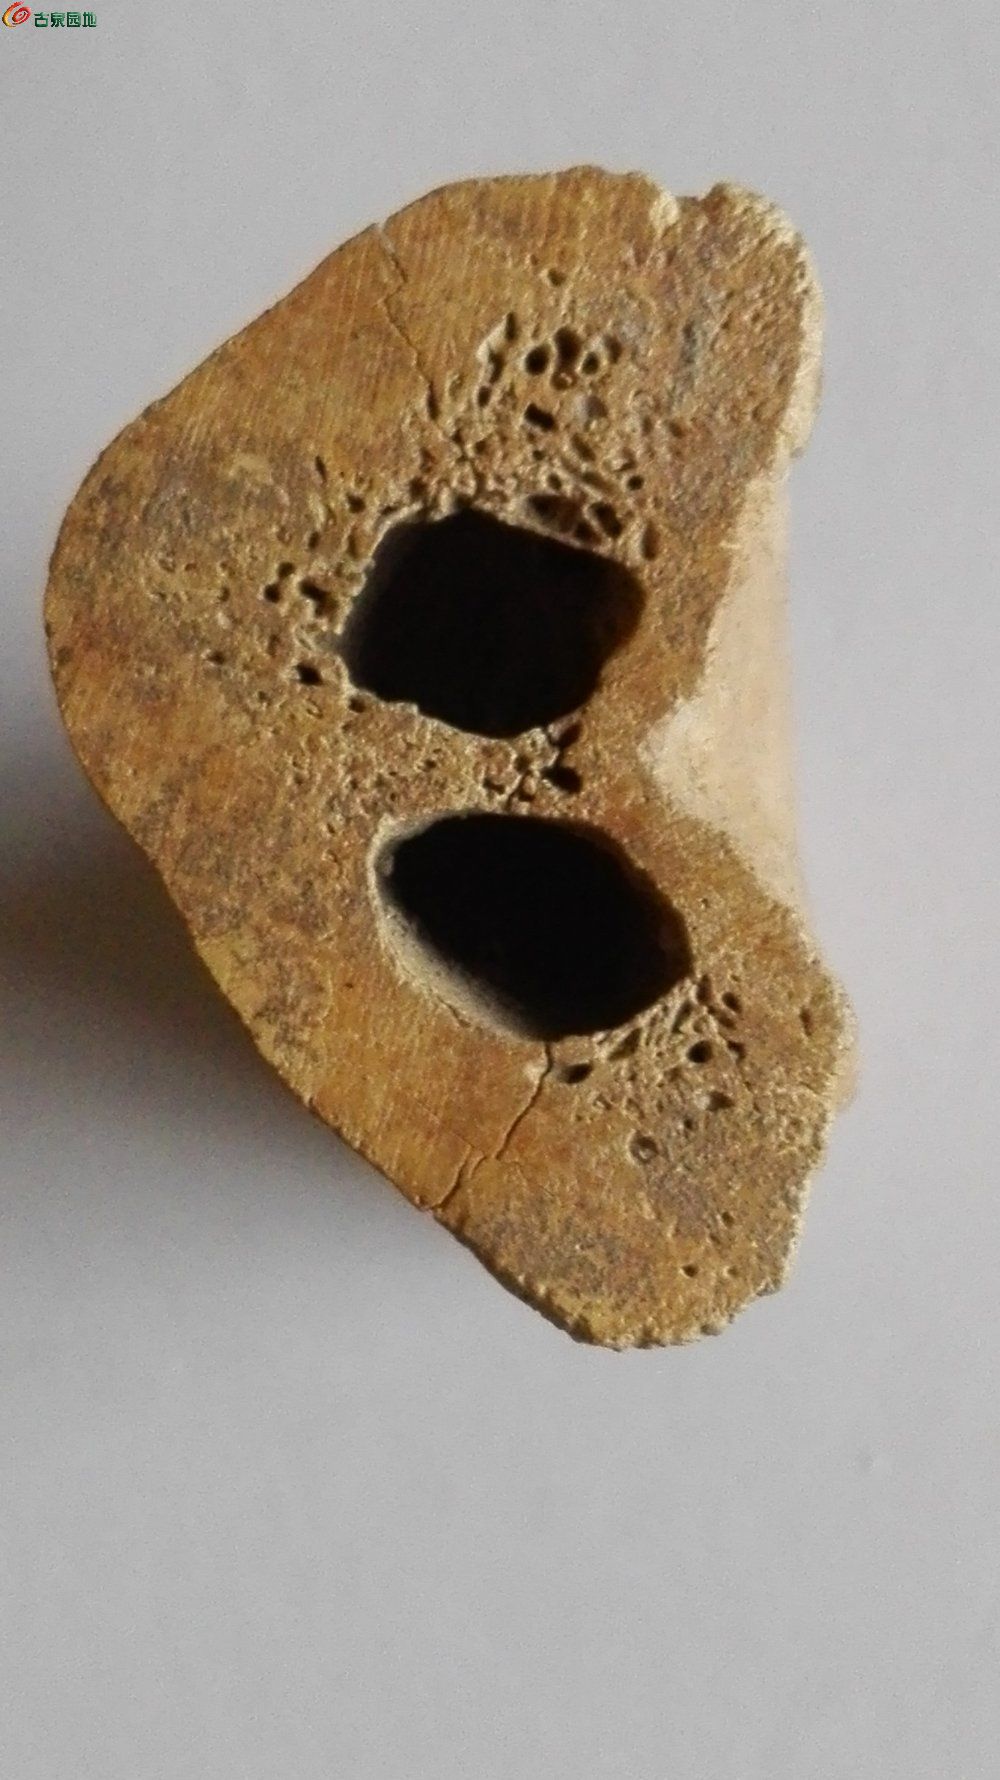 出土的虎骨化石图片